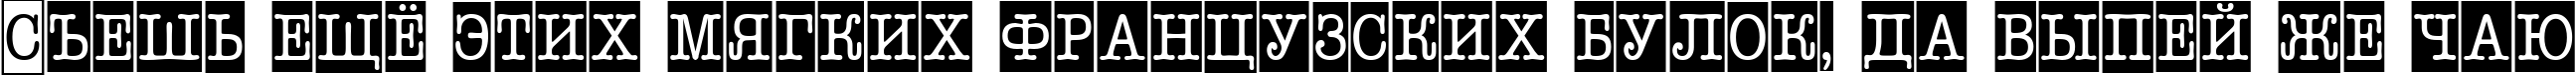 Пример написания шрифтом a_OldTyperNrCmCmb1 текста на русском